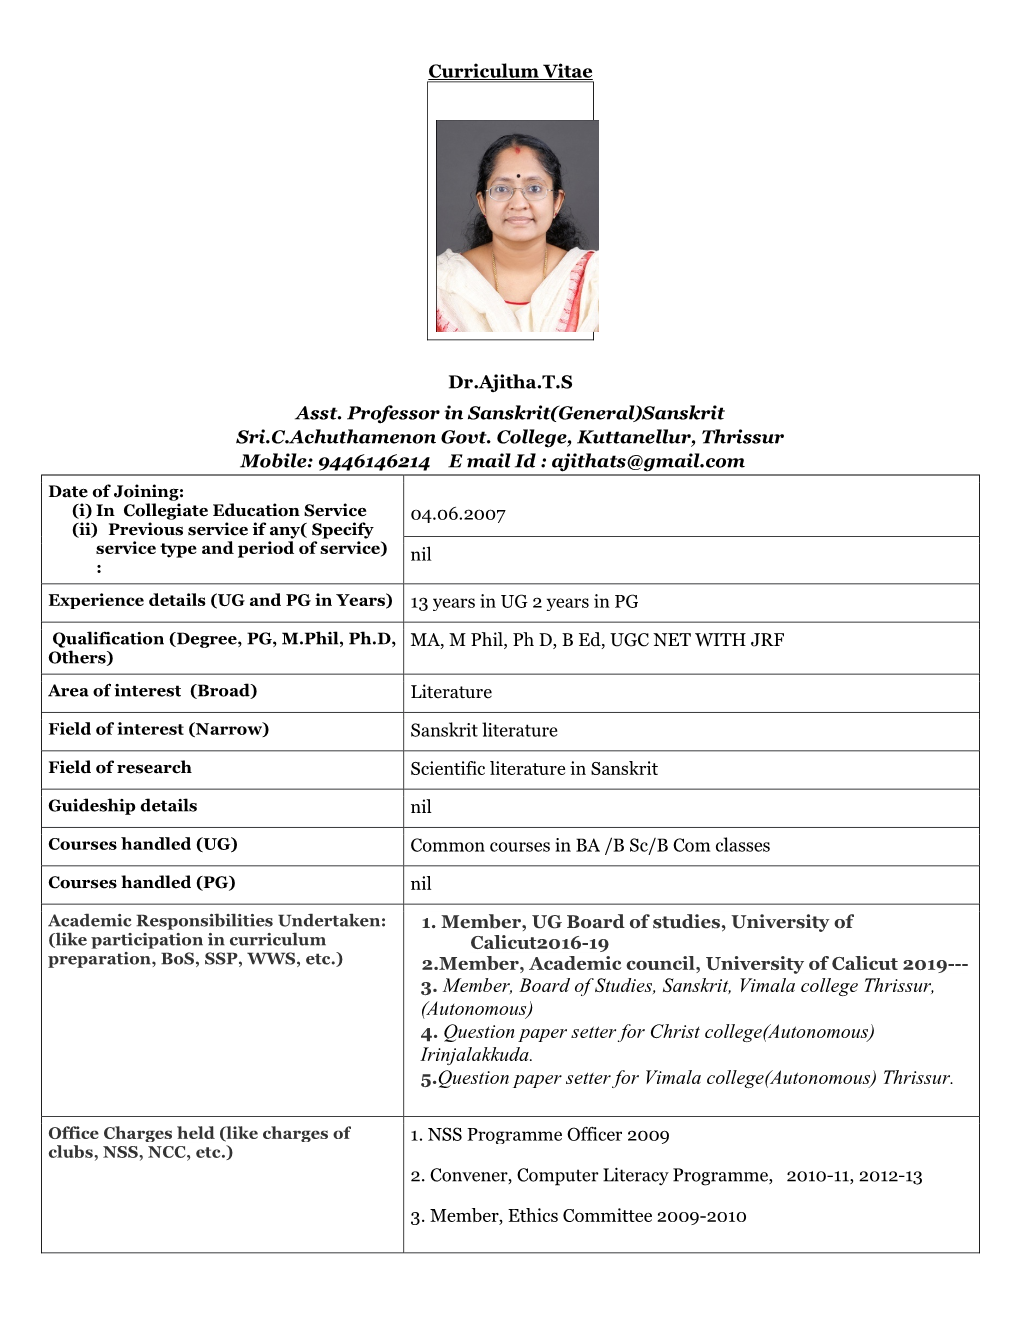 3. Member, Board of Studies, Sanskrit, Vimala College Thrissur, (Autonomous) 4